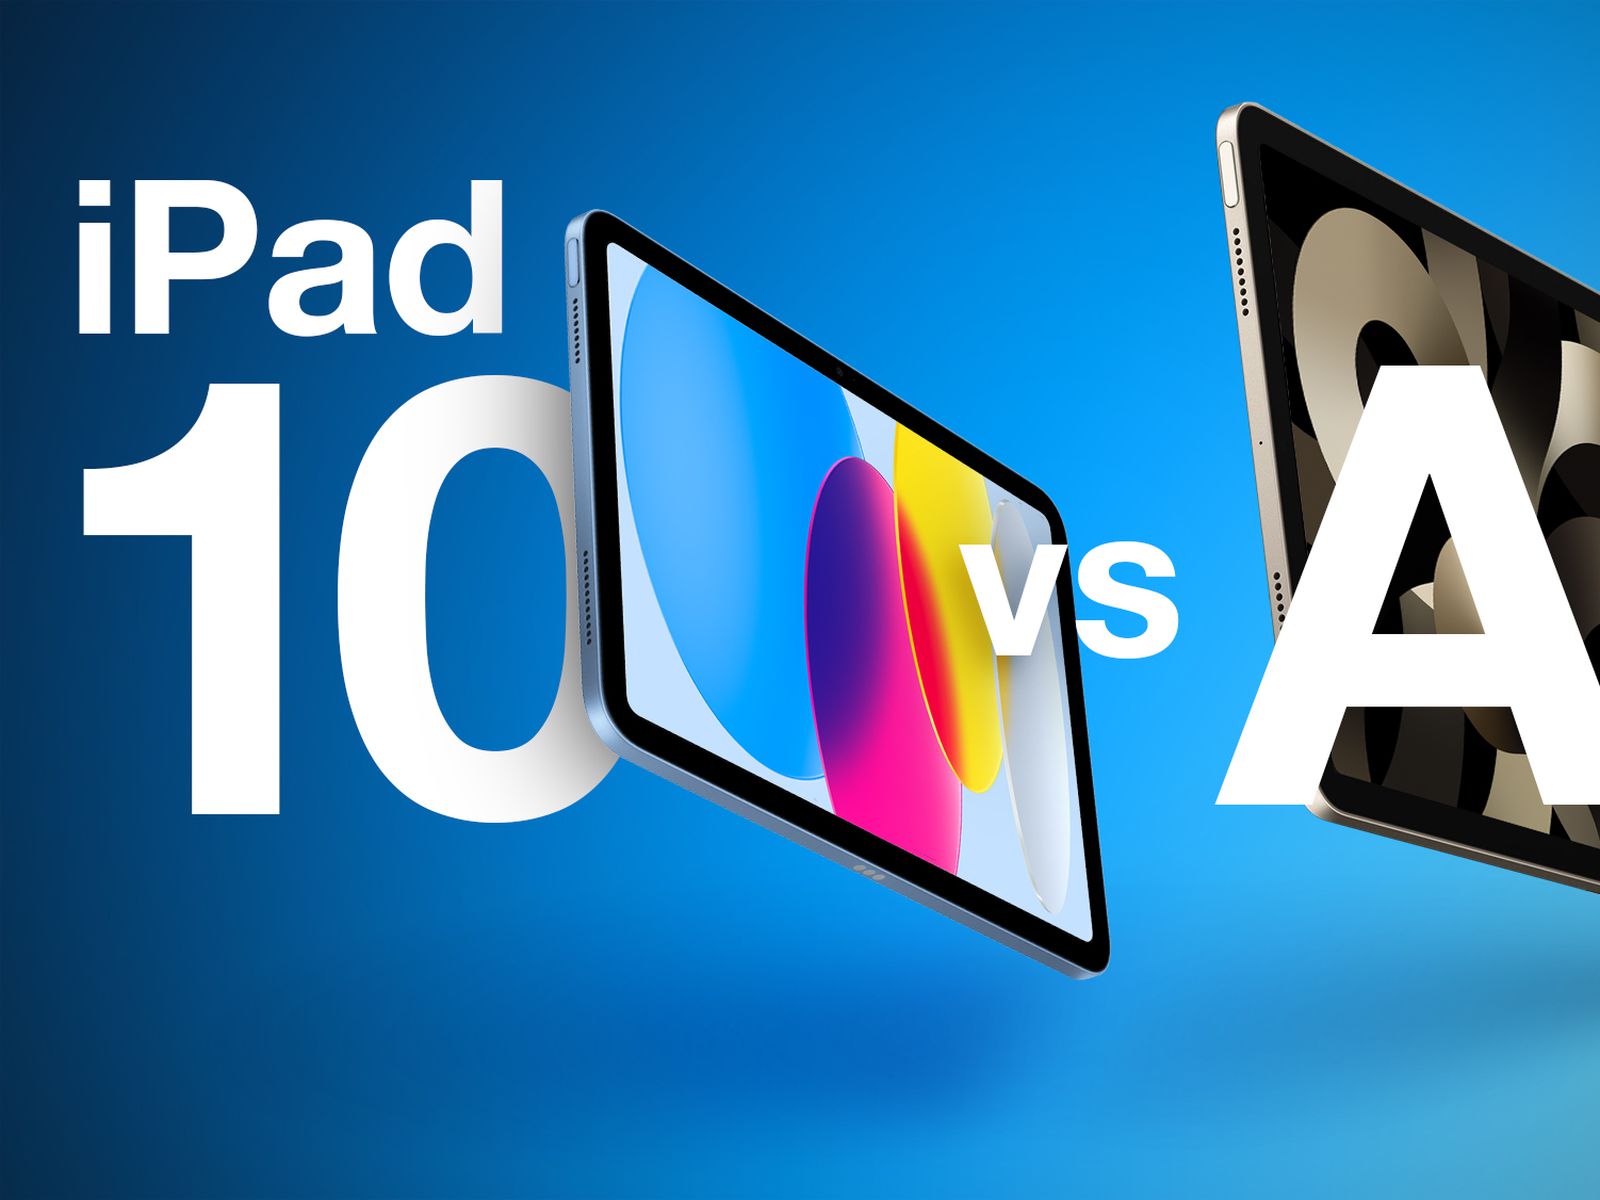 Bạn đang phân vân không biết nên chọn iPad 10 hay iPad Air? Hãy xem ngay hướng dẫn từ các chuyên gia và so sánh giá trị của từng sản phẩm để có quyết định chính xác nhất. Đừng bỏ lỡ cơ hội tham khảo để mua được chiếc máy tính bảng phù hợp với định vị của bạn!